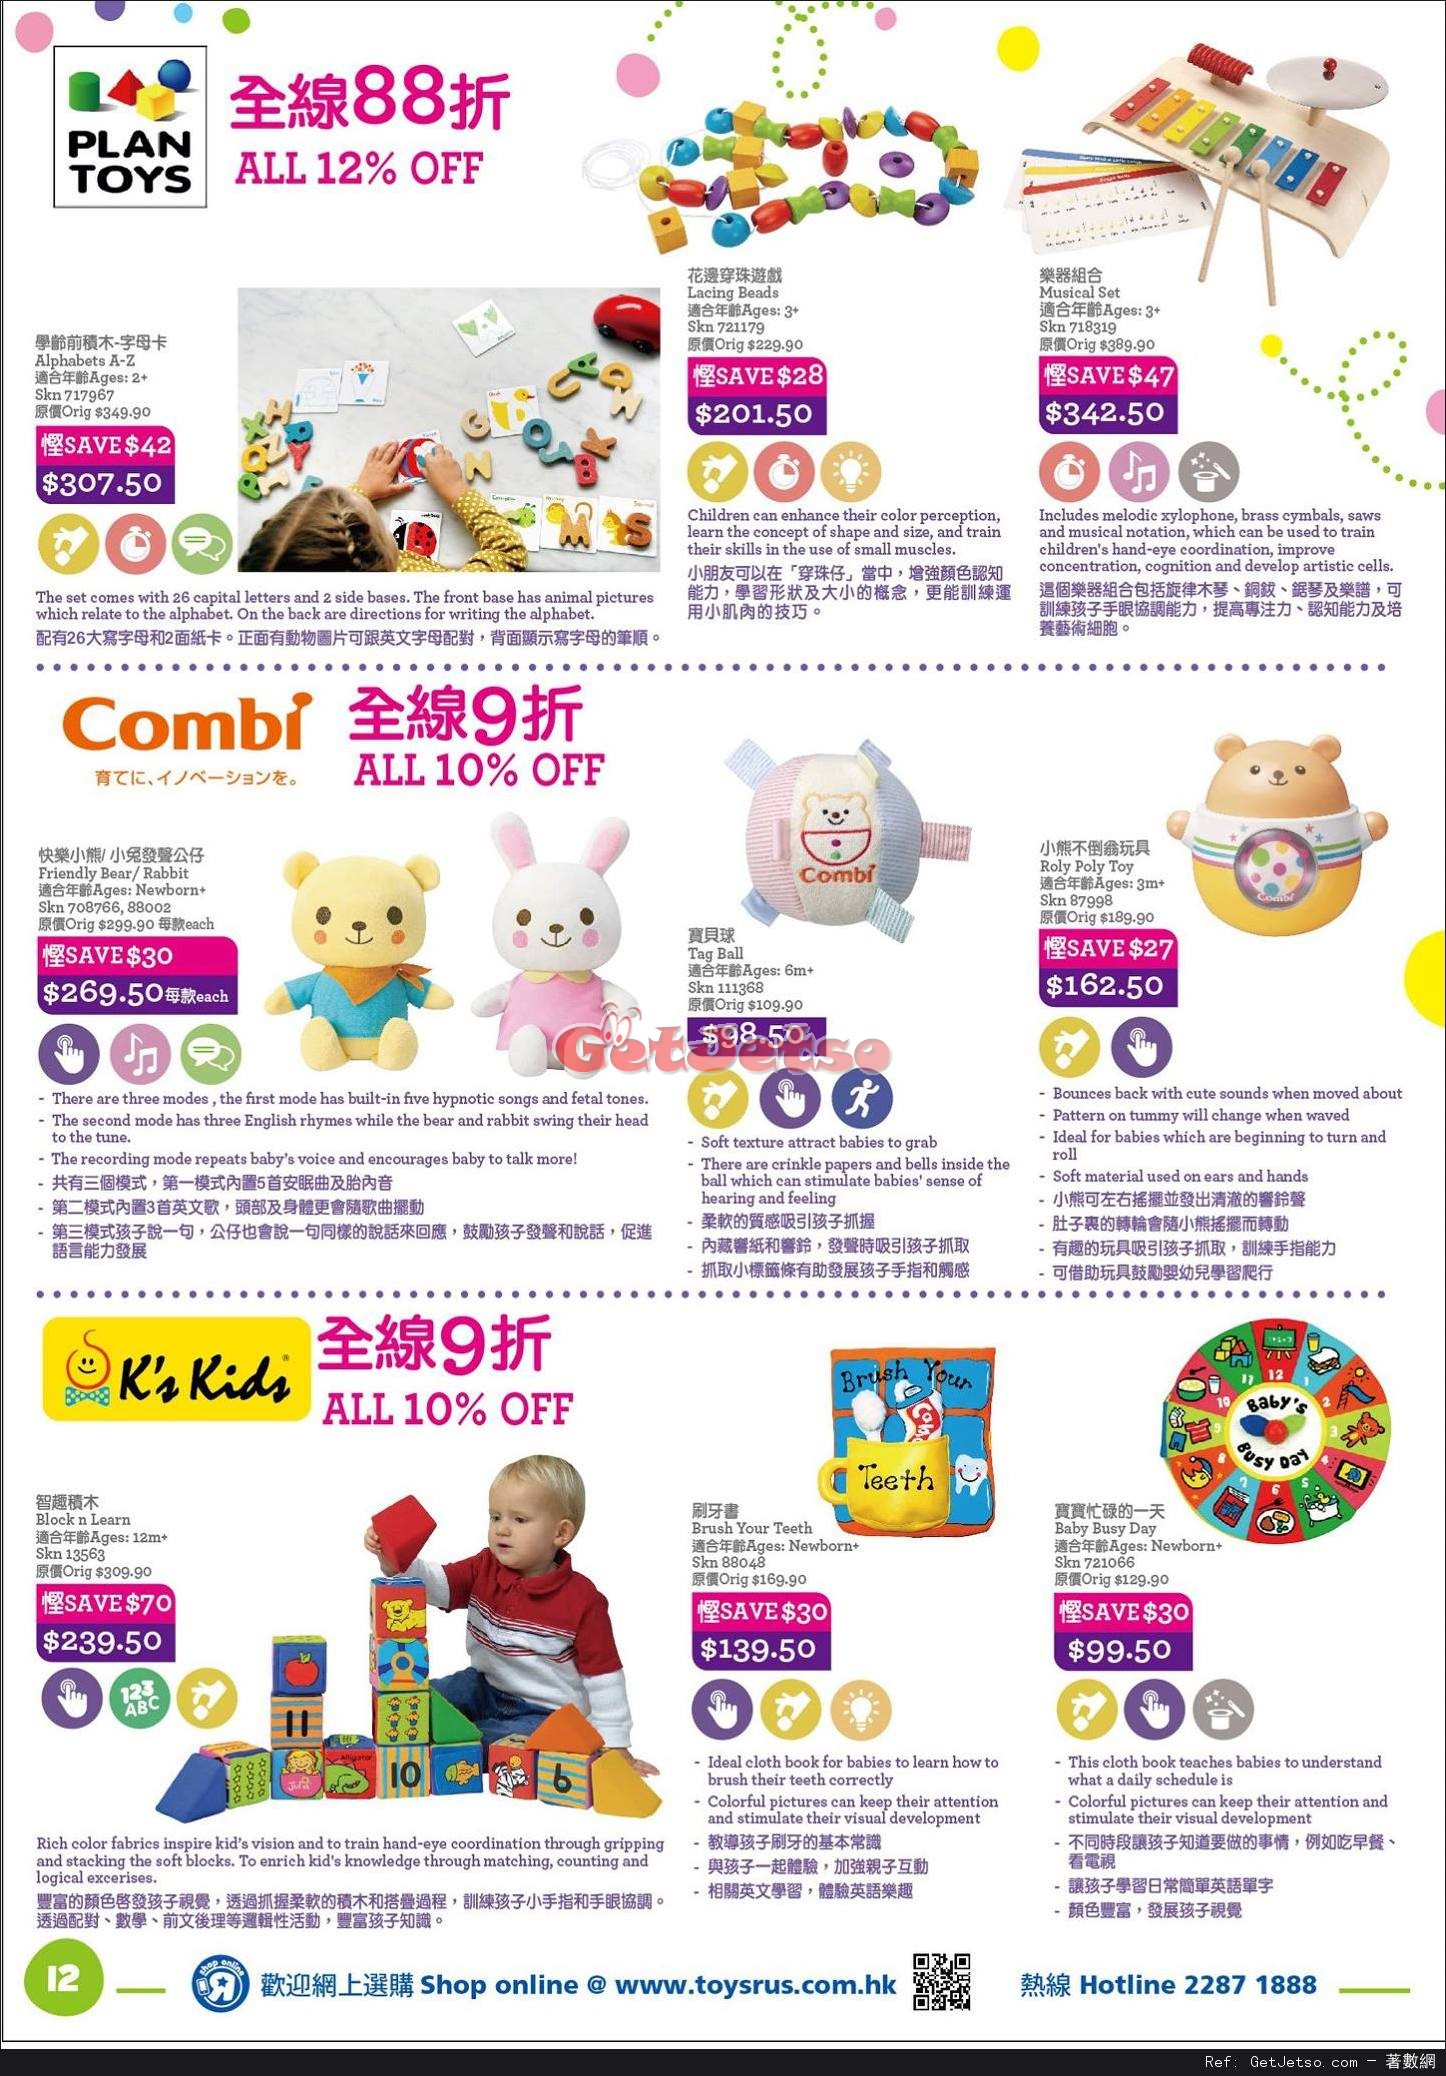 玩具反斗城Toys"R"Us 嬰兒用品低至2折開倉優惠(至17年4月18日)圖片12